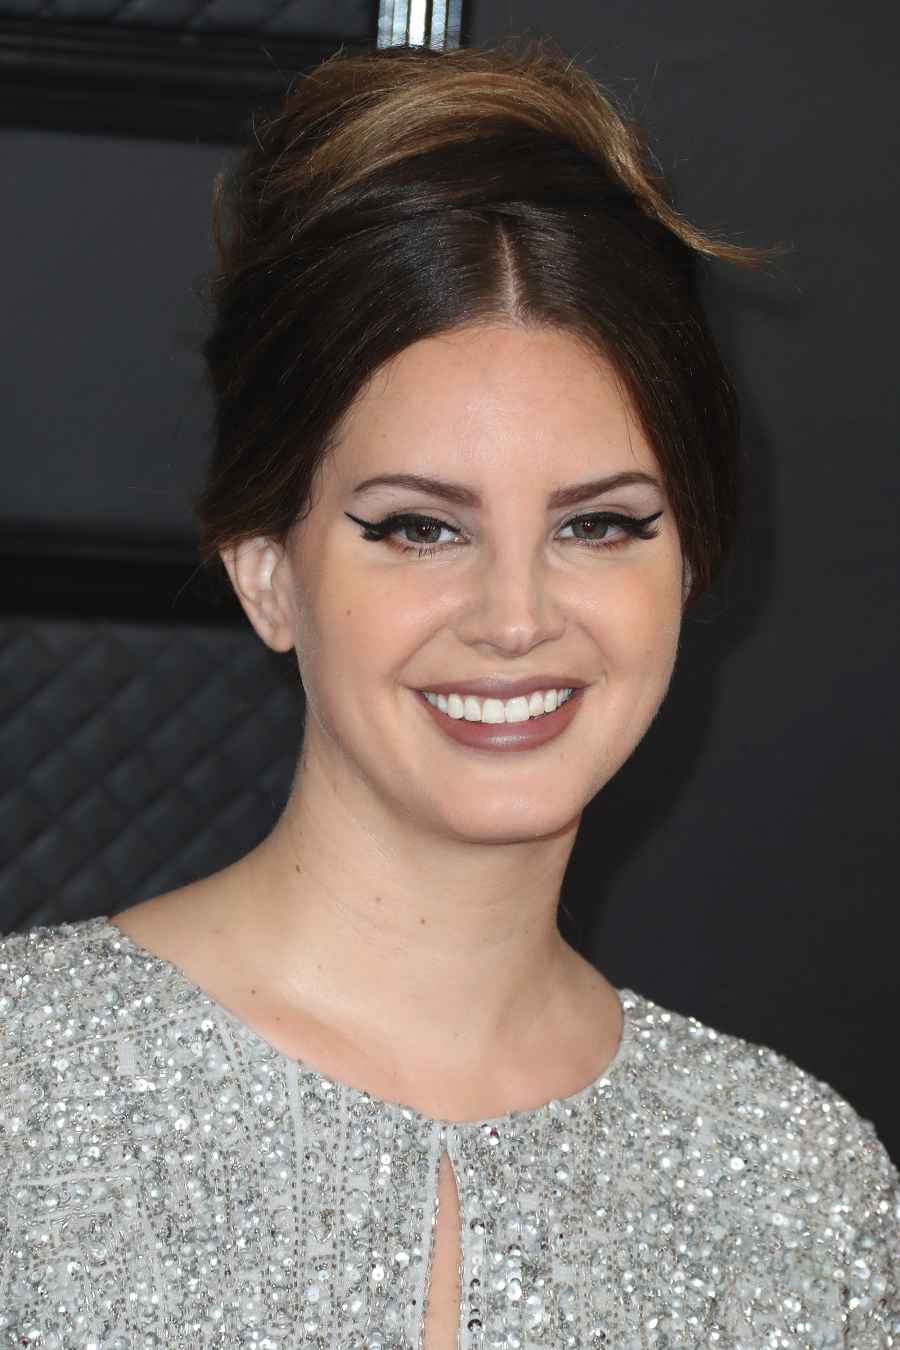 Grammy Awards 2020 Best Beauty - Lana Del Rey